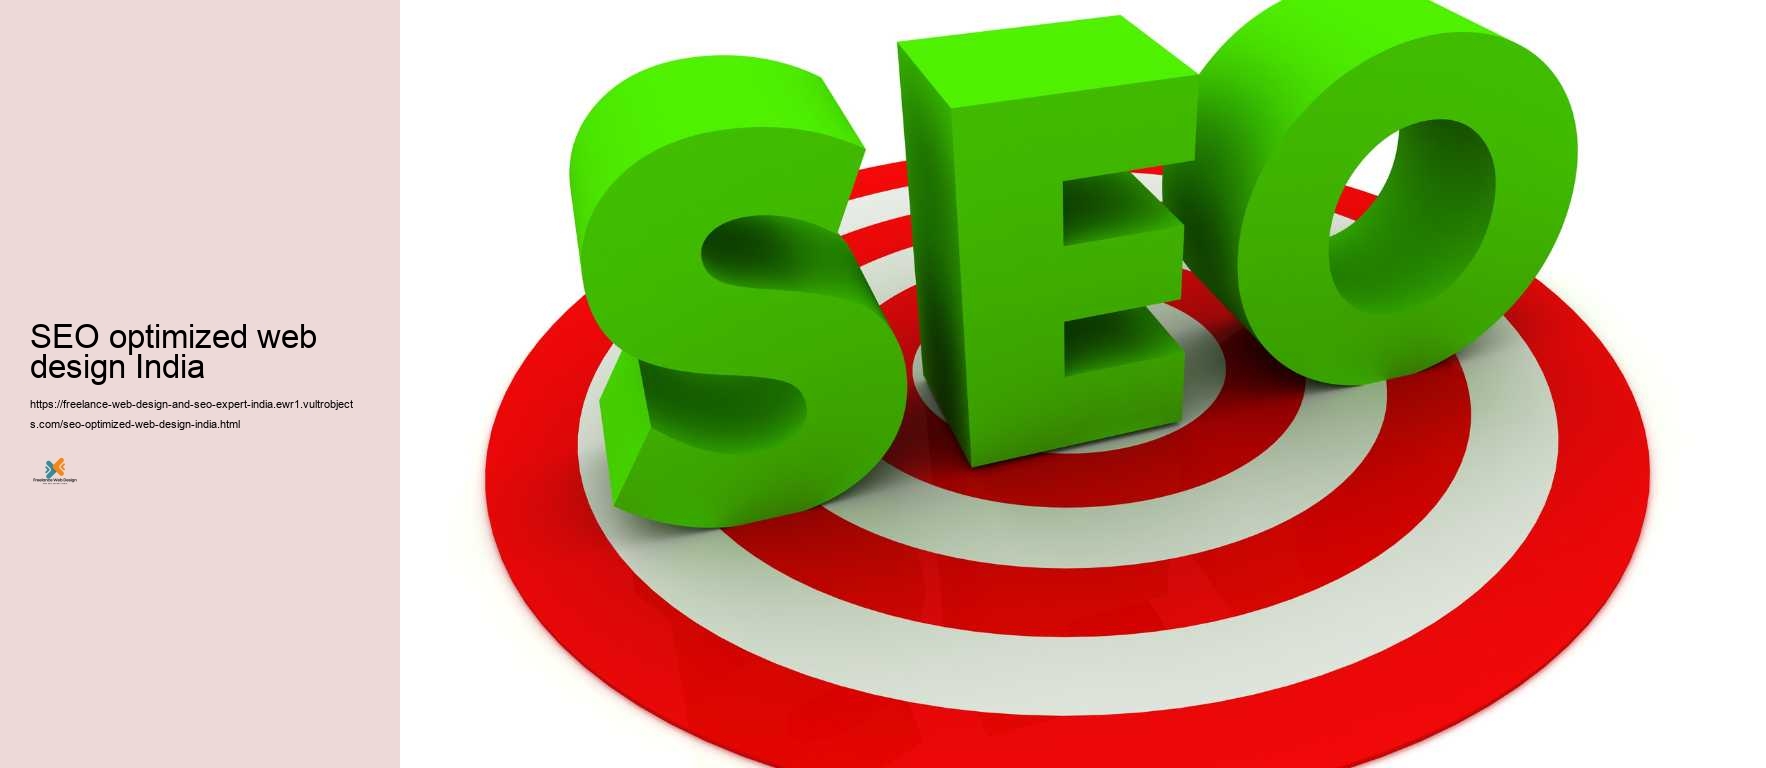 SEO optimized web design India